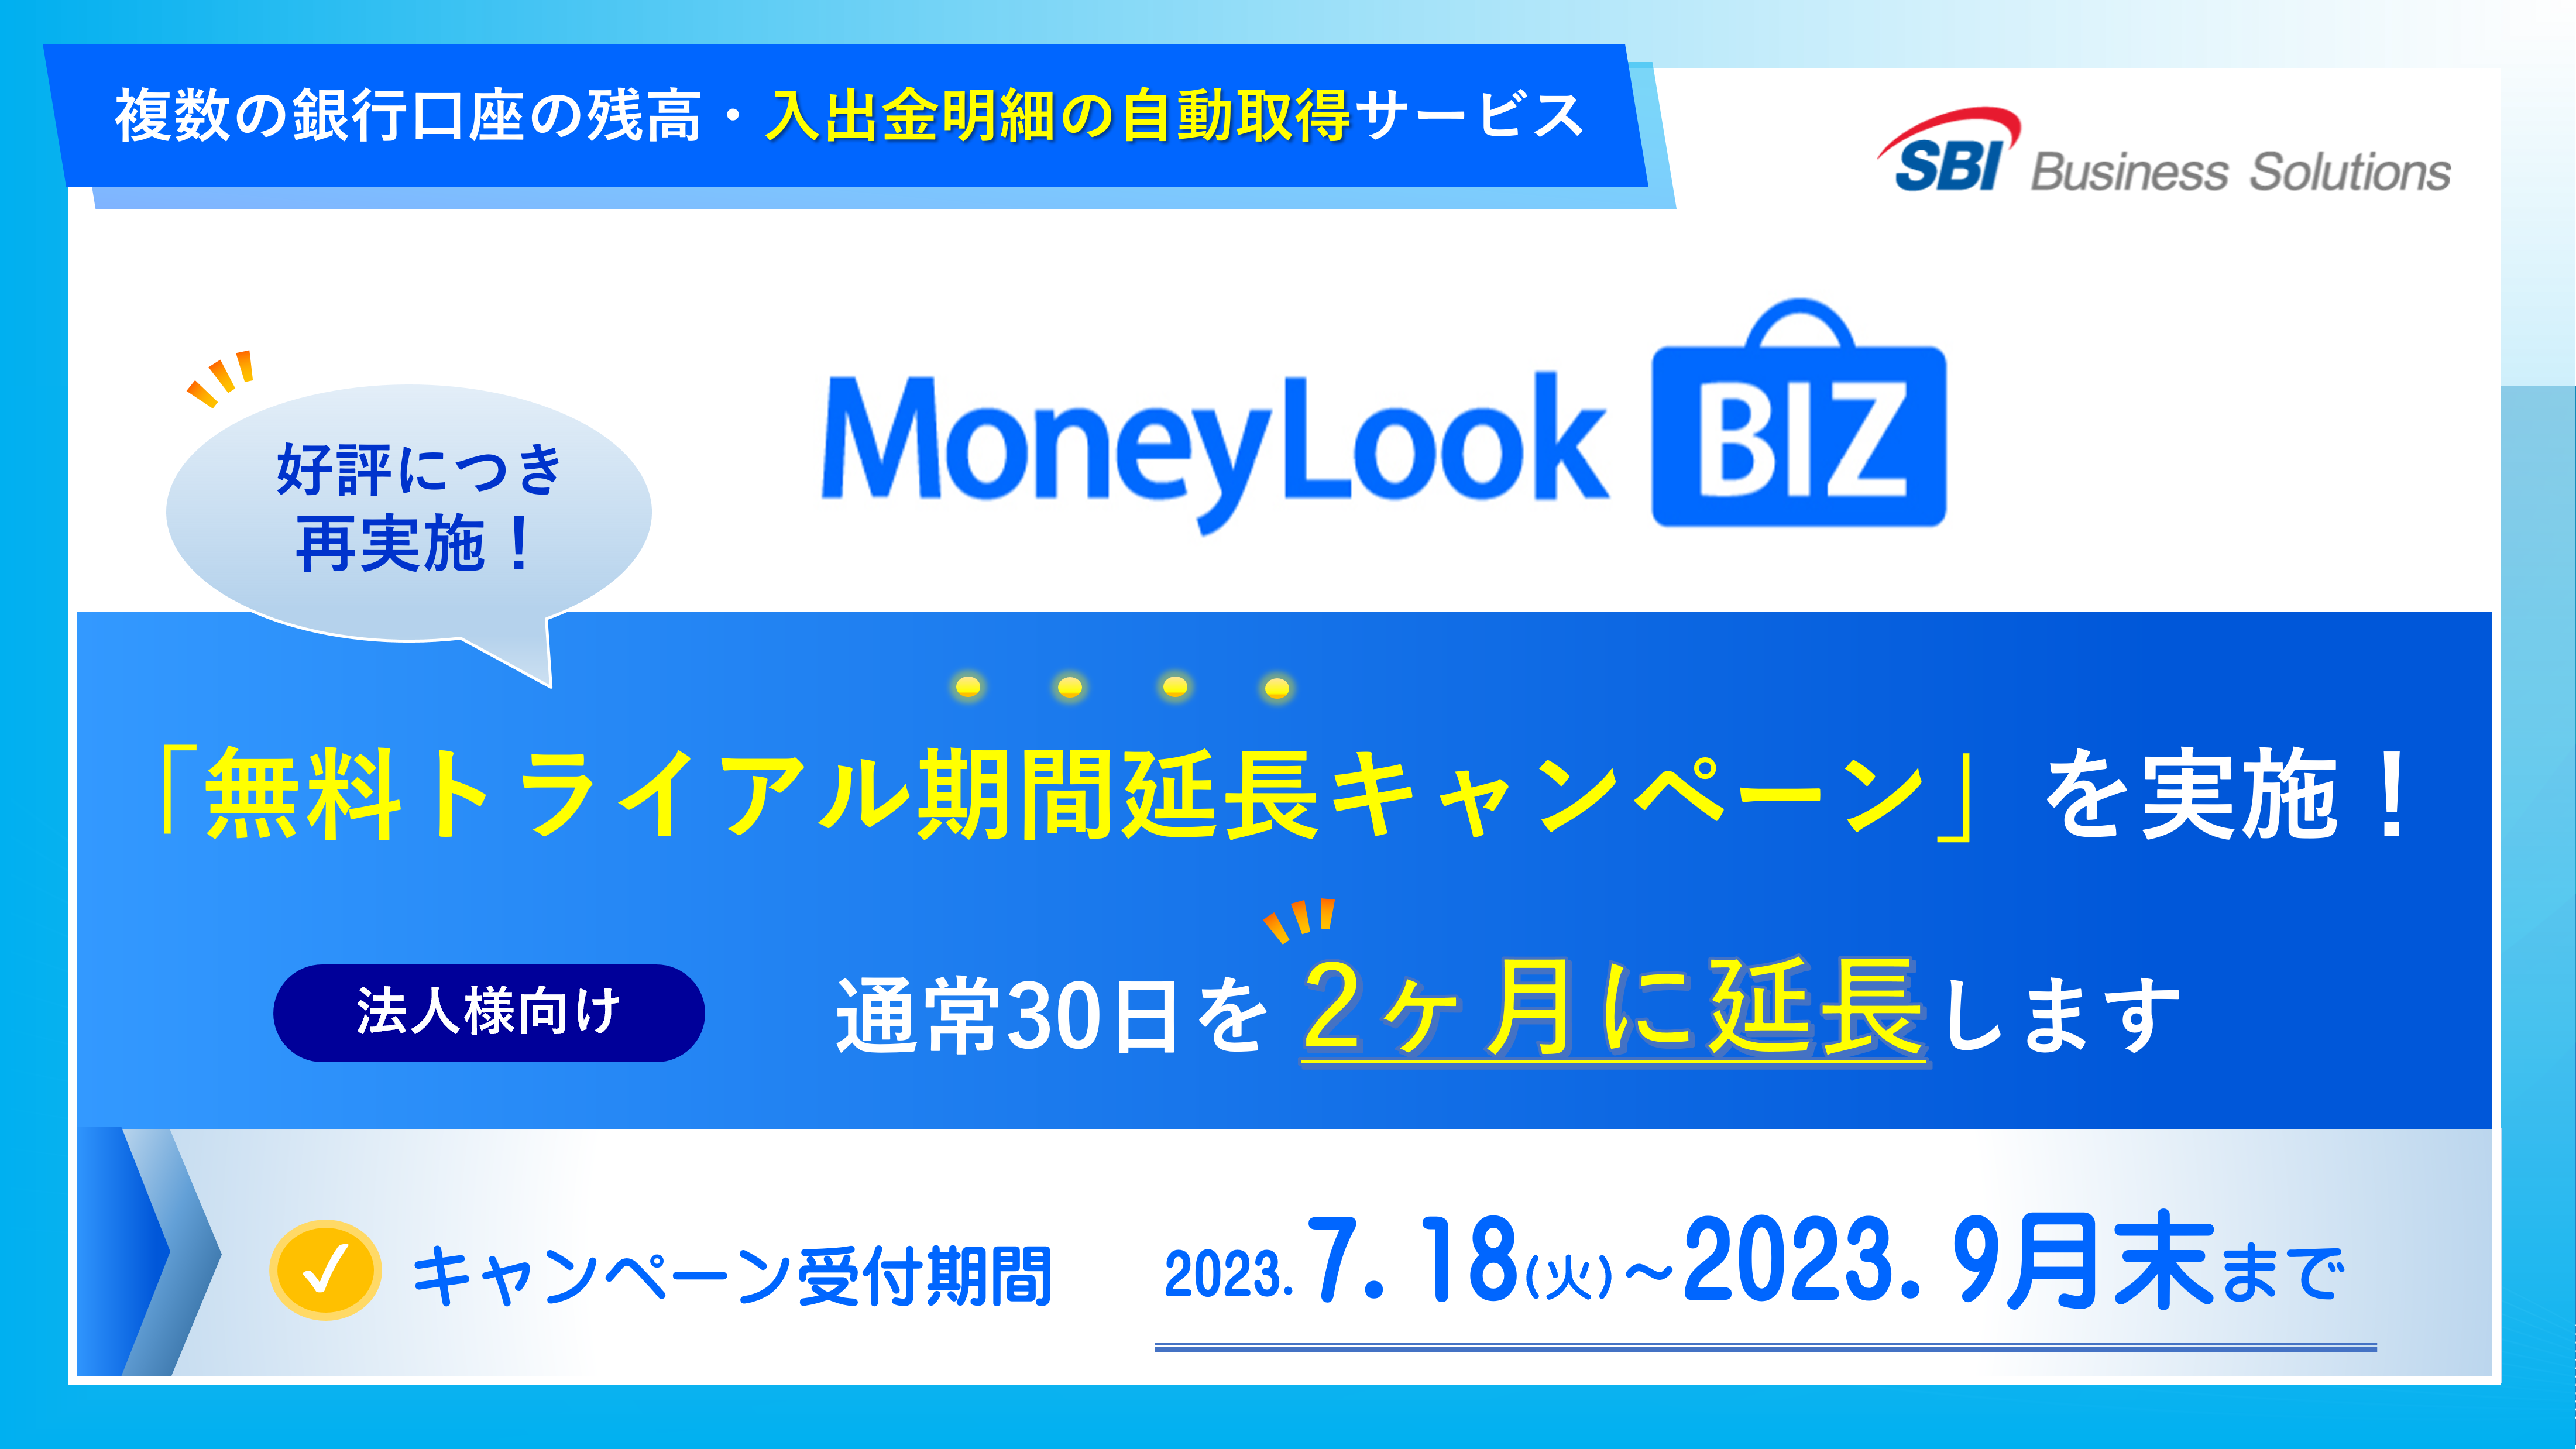 銀行入出金明細自動取得サービス「MoneyLook BIZ」、好評につき無料